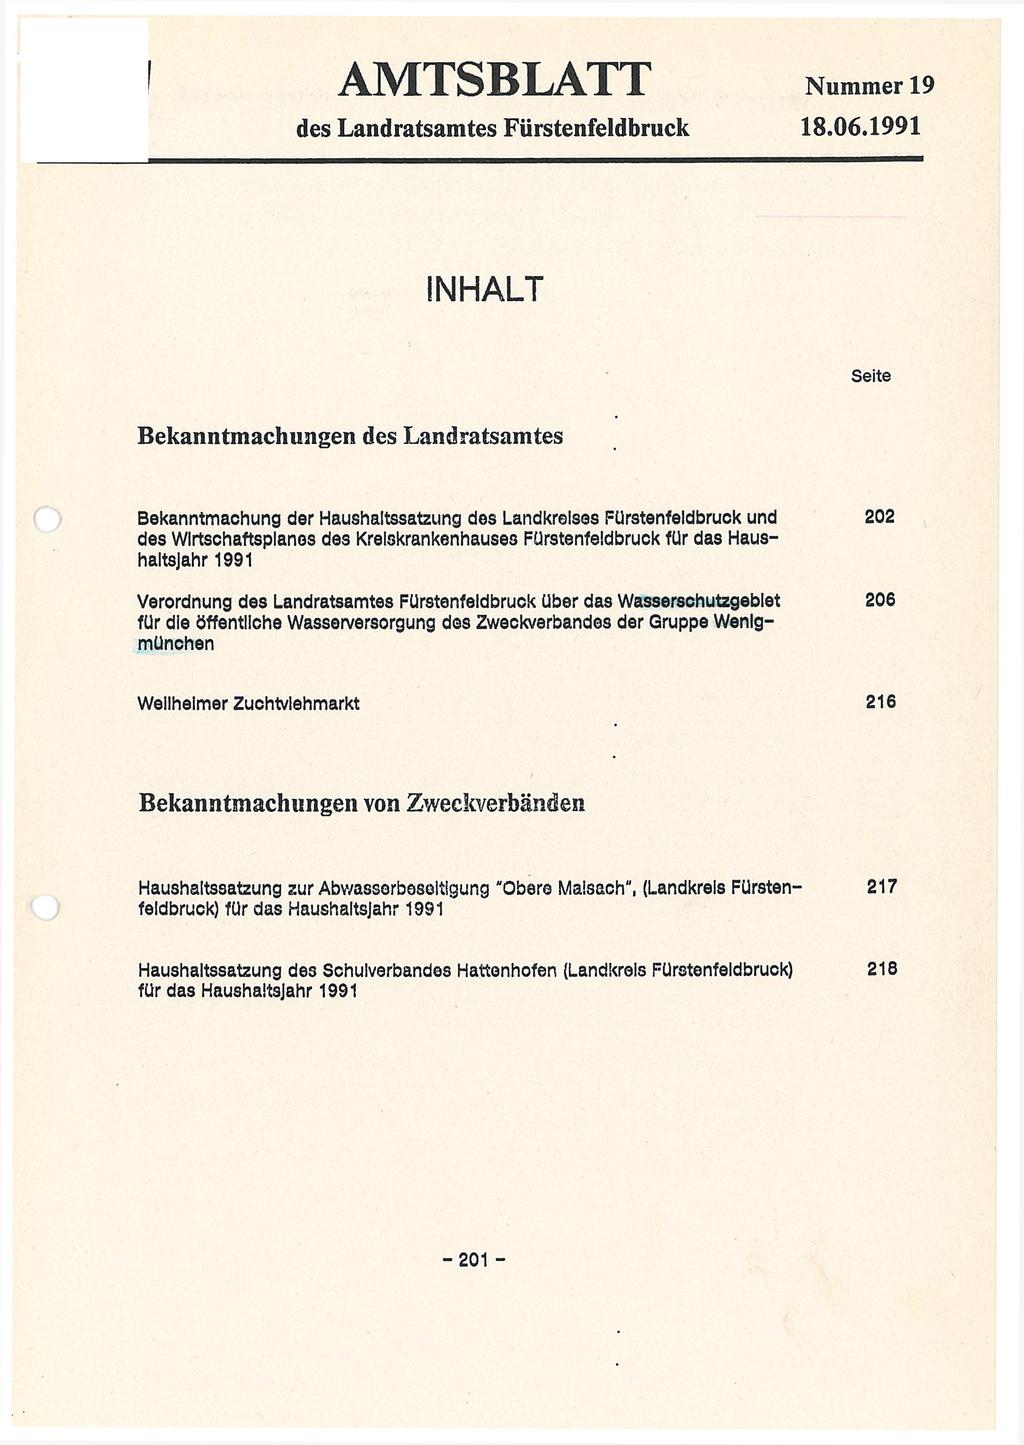 AMTSBLATT des Landratsamtes Fürstenfeldbruck Nummer 19 18.06.